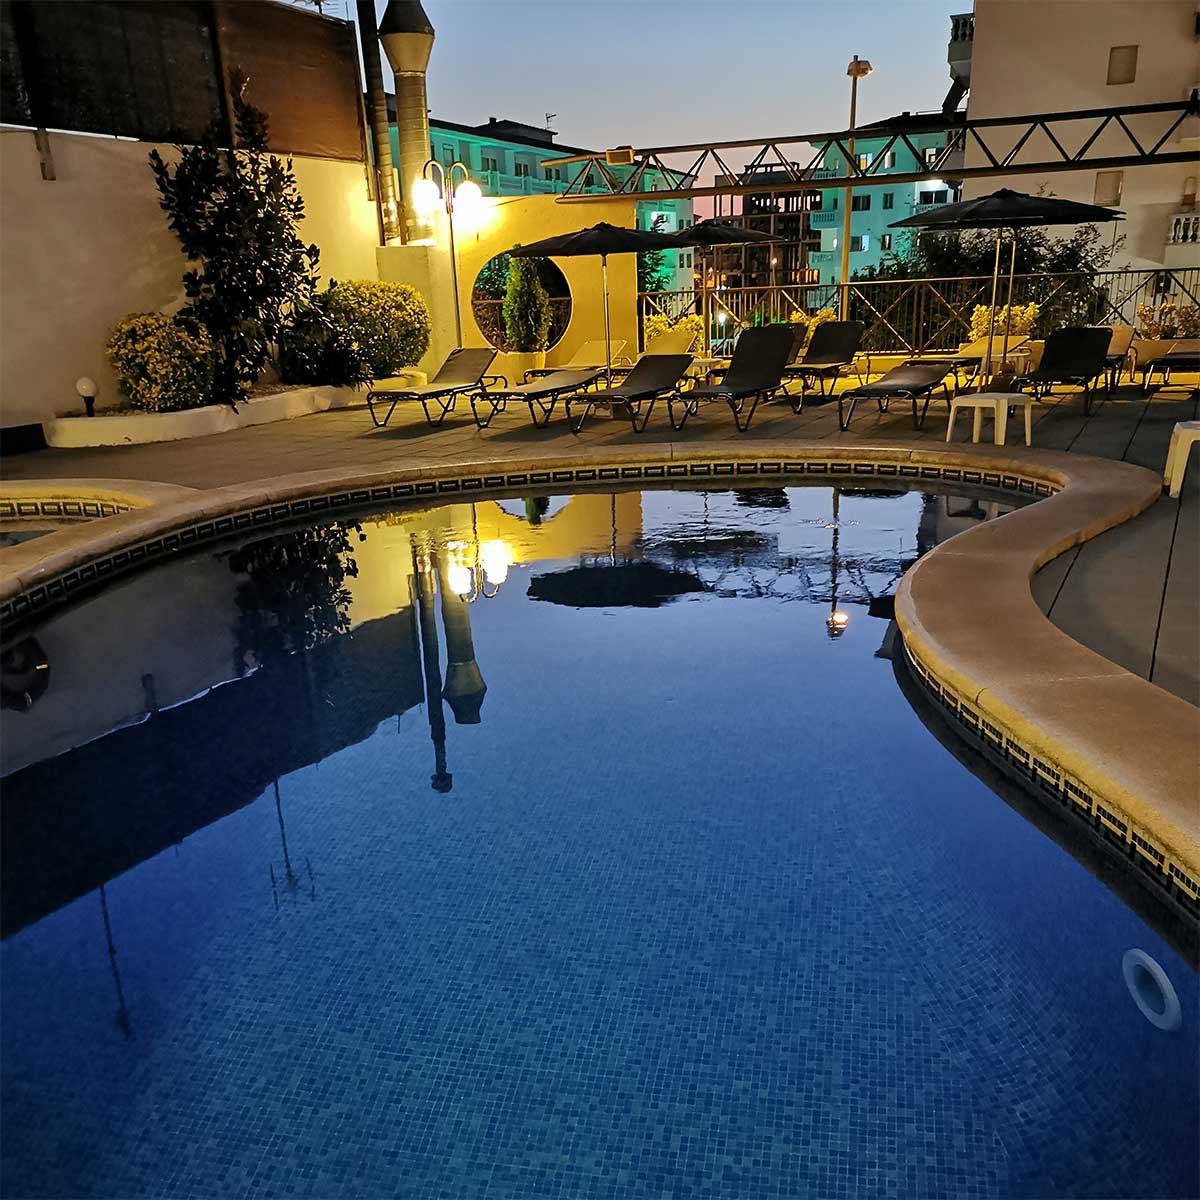 Servicios: En el Hotel Petit Palau disponemos de servicio de piscina exterior y solarium